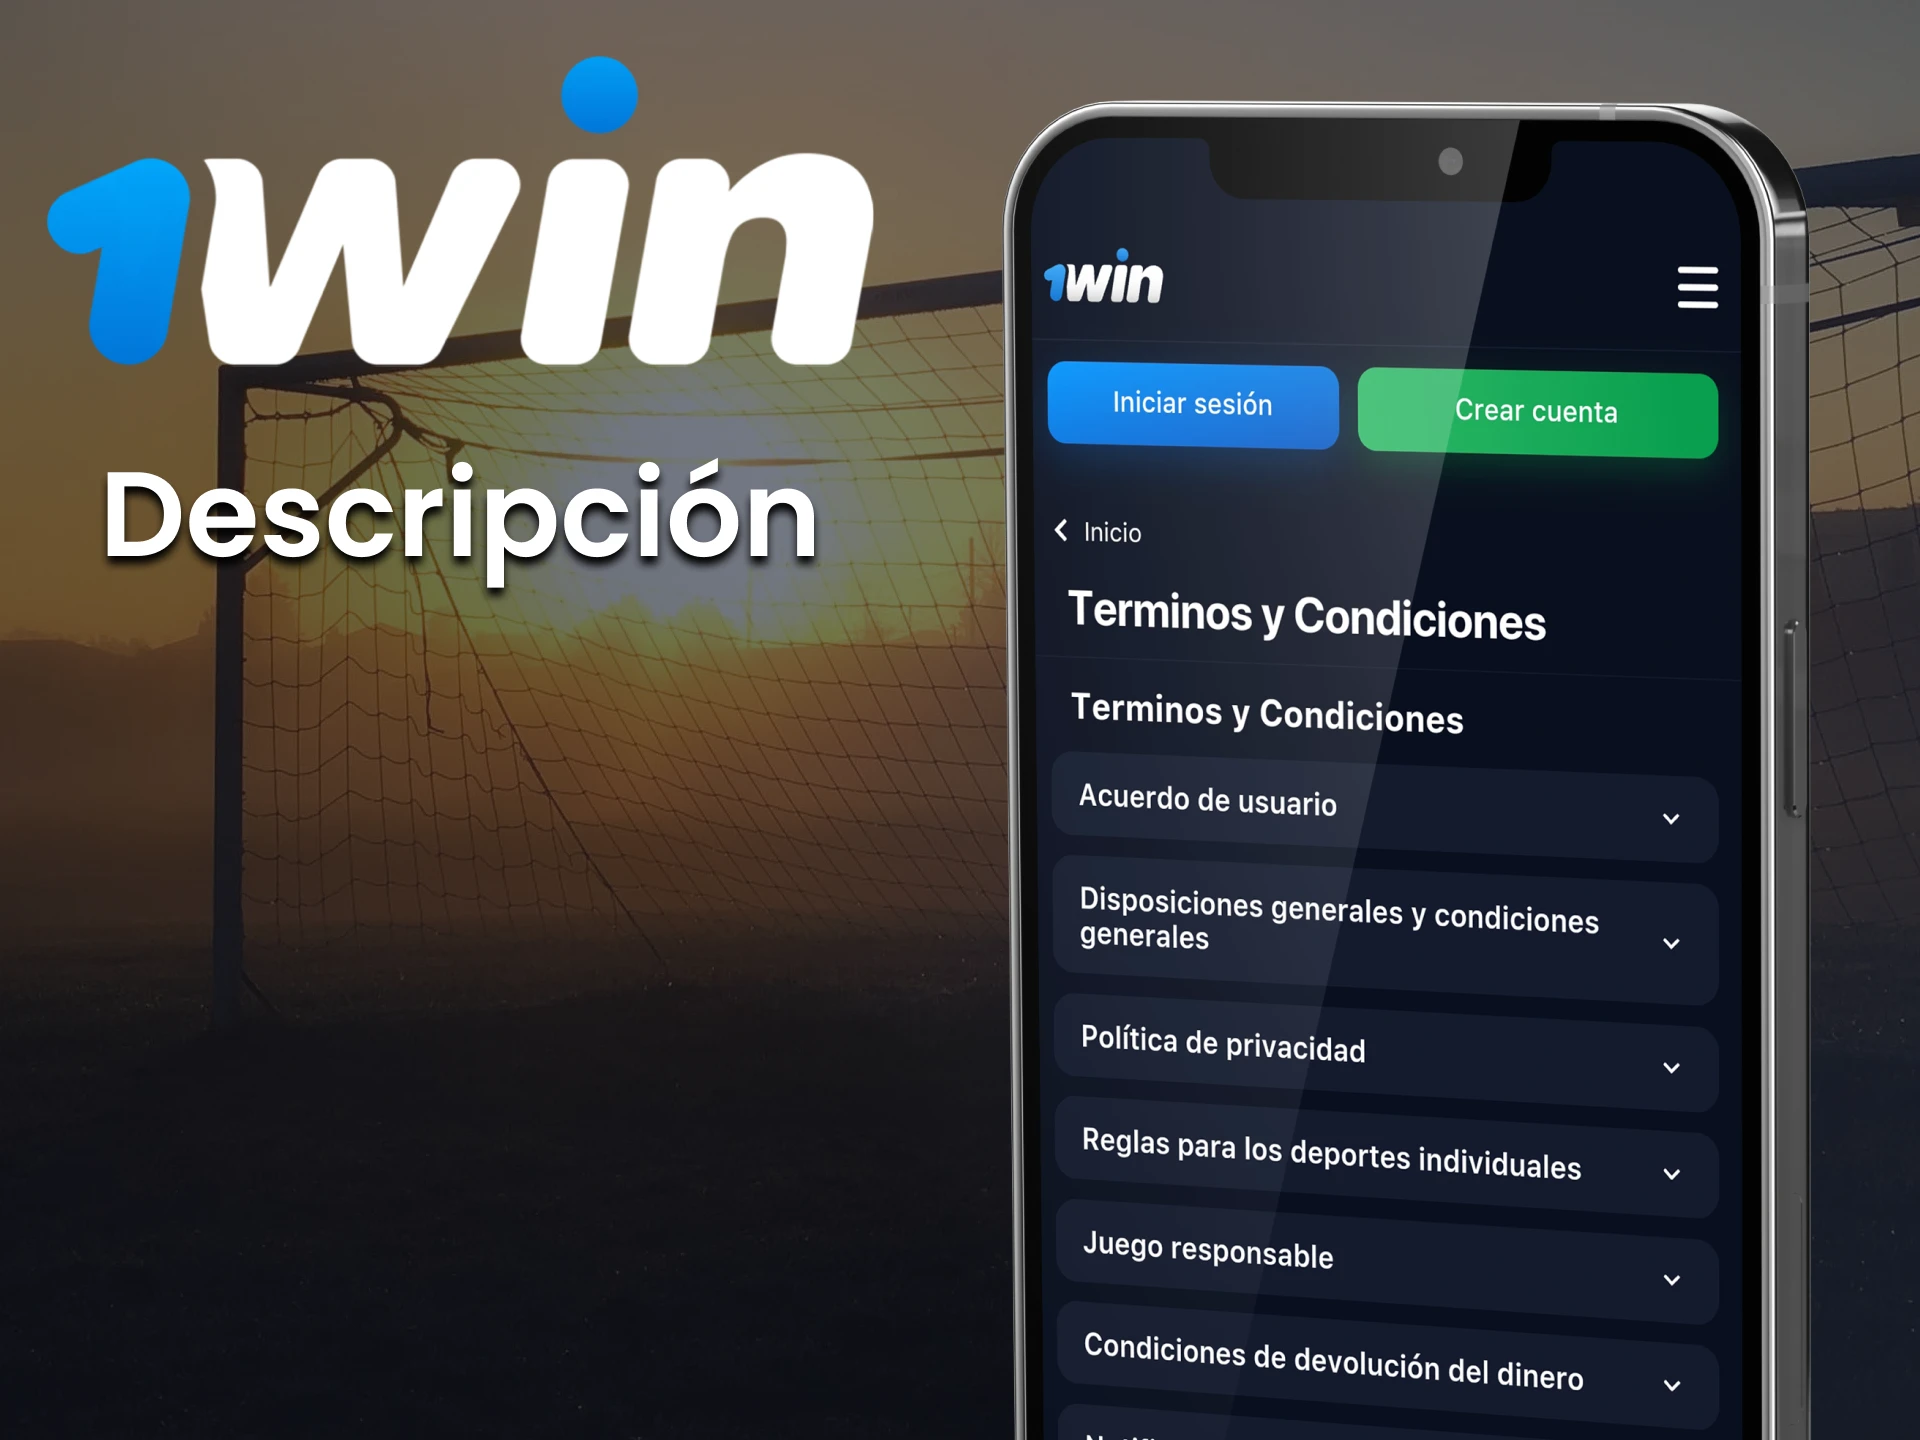 Utiliza la versión móvil de la web si no puedes instalar la app de 1win.